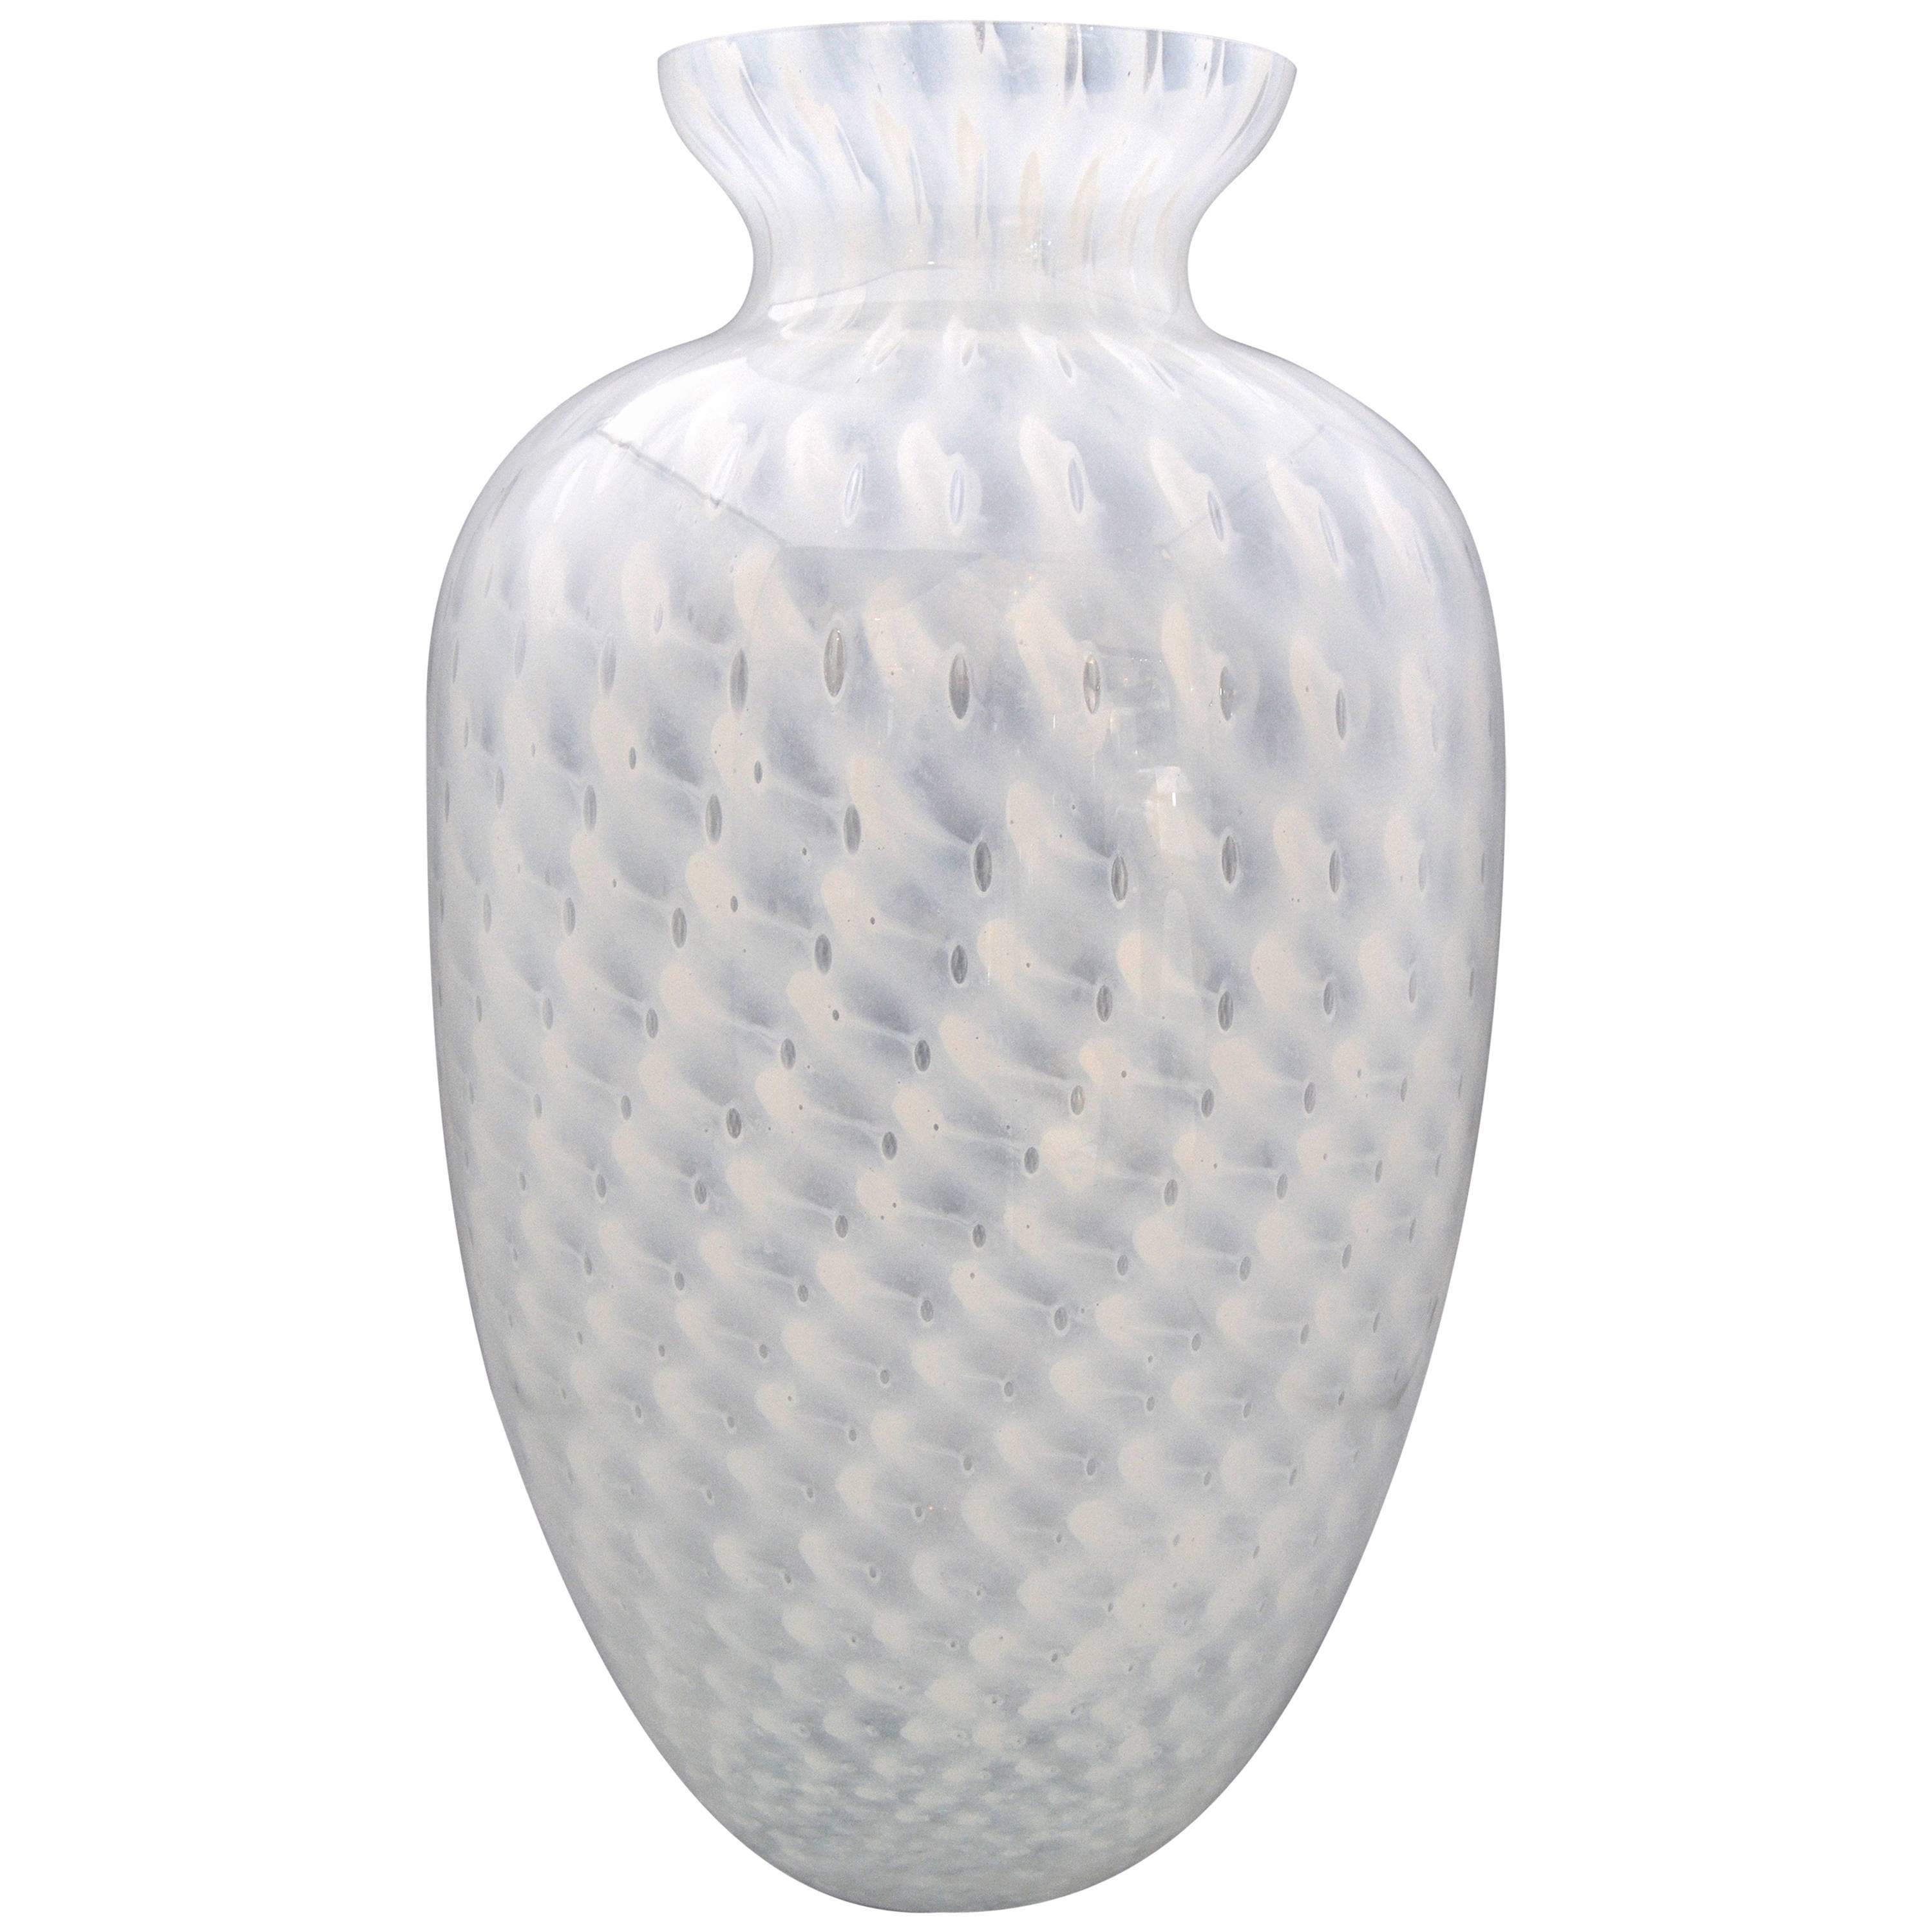 Handblown Italian Murano Art Glass Vase 